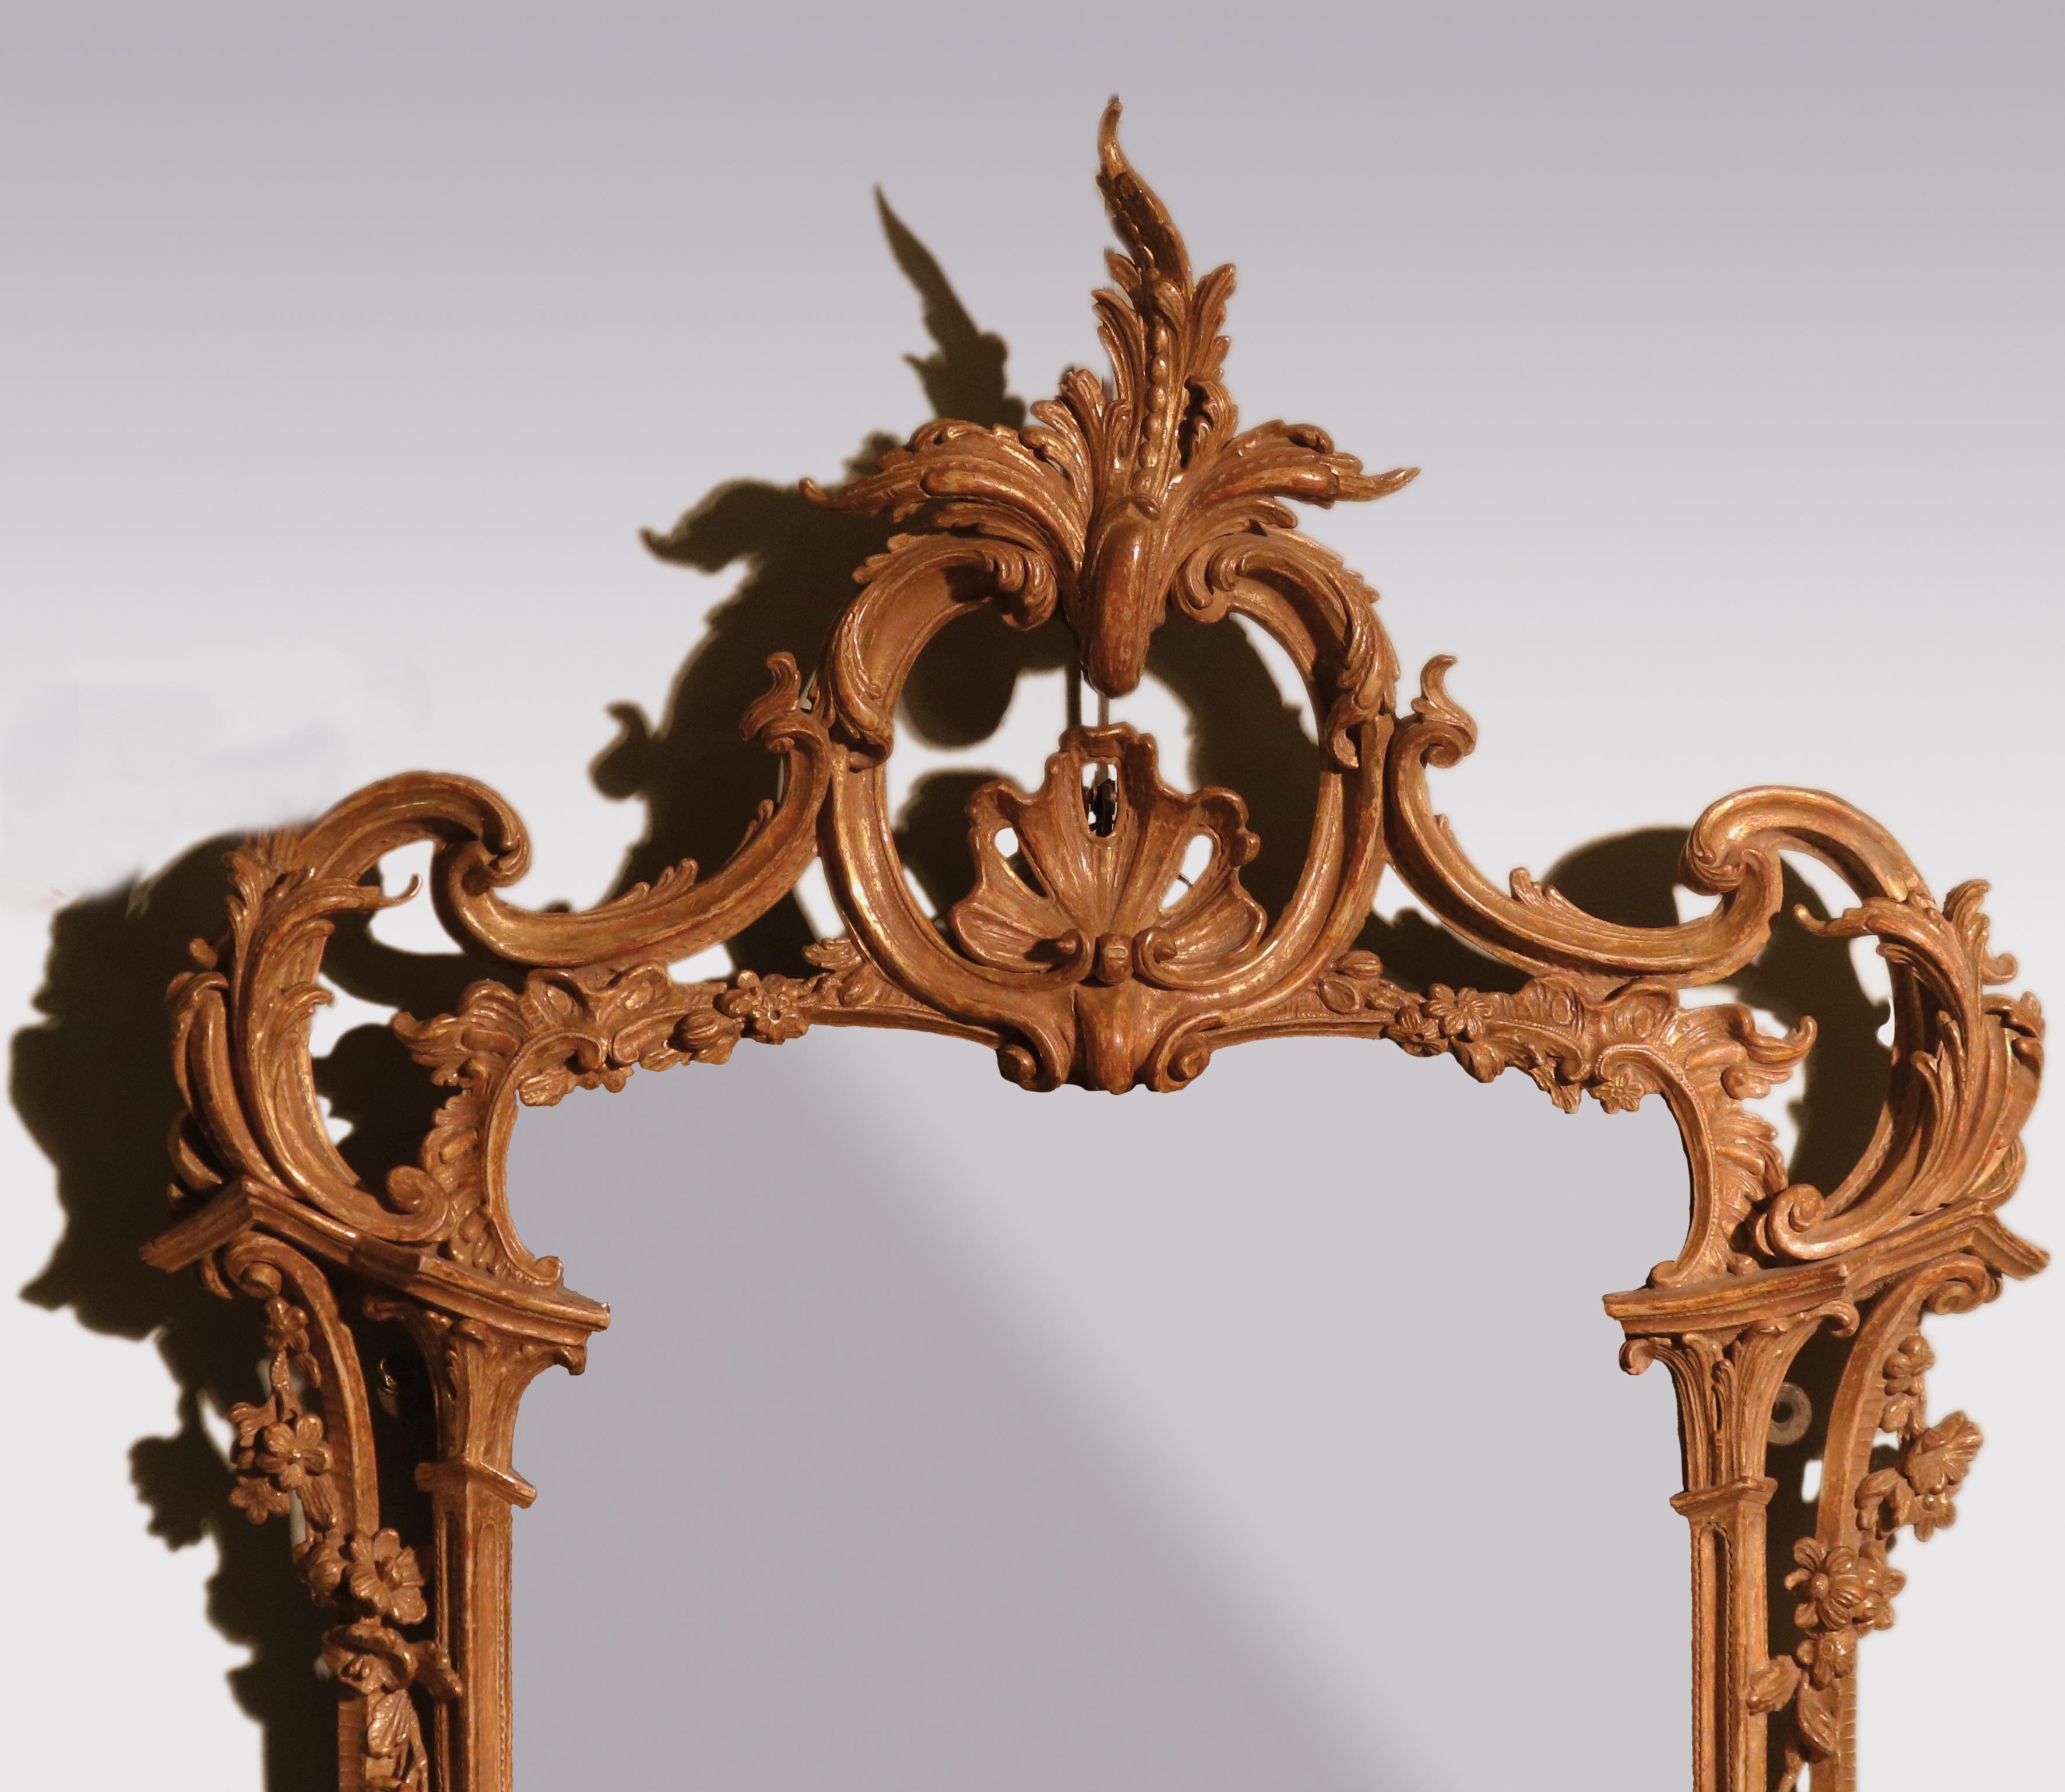 Eine feine Qualität knackig geschnitzt Mitte des 18. Jahrhunderts Vergoldung Spiegel, mit c-Rolle Akanthus und Blumenschmuck im gesamten, in 